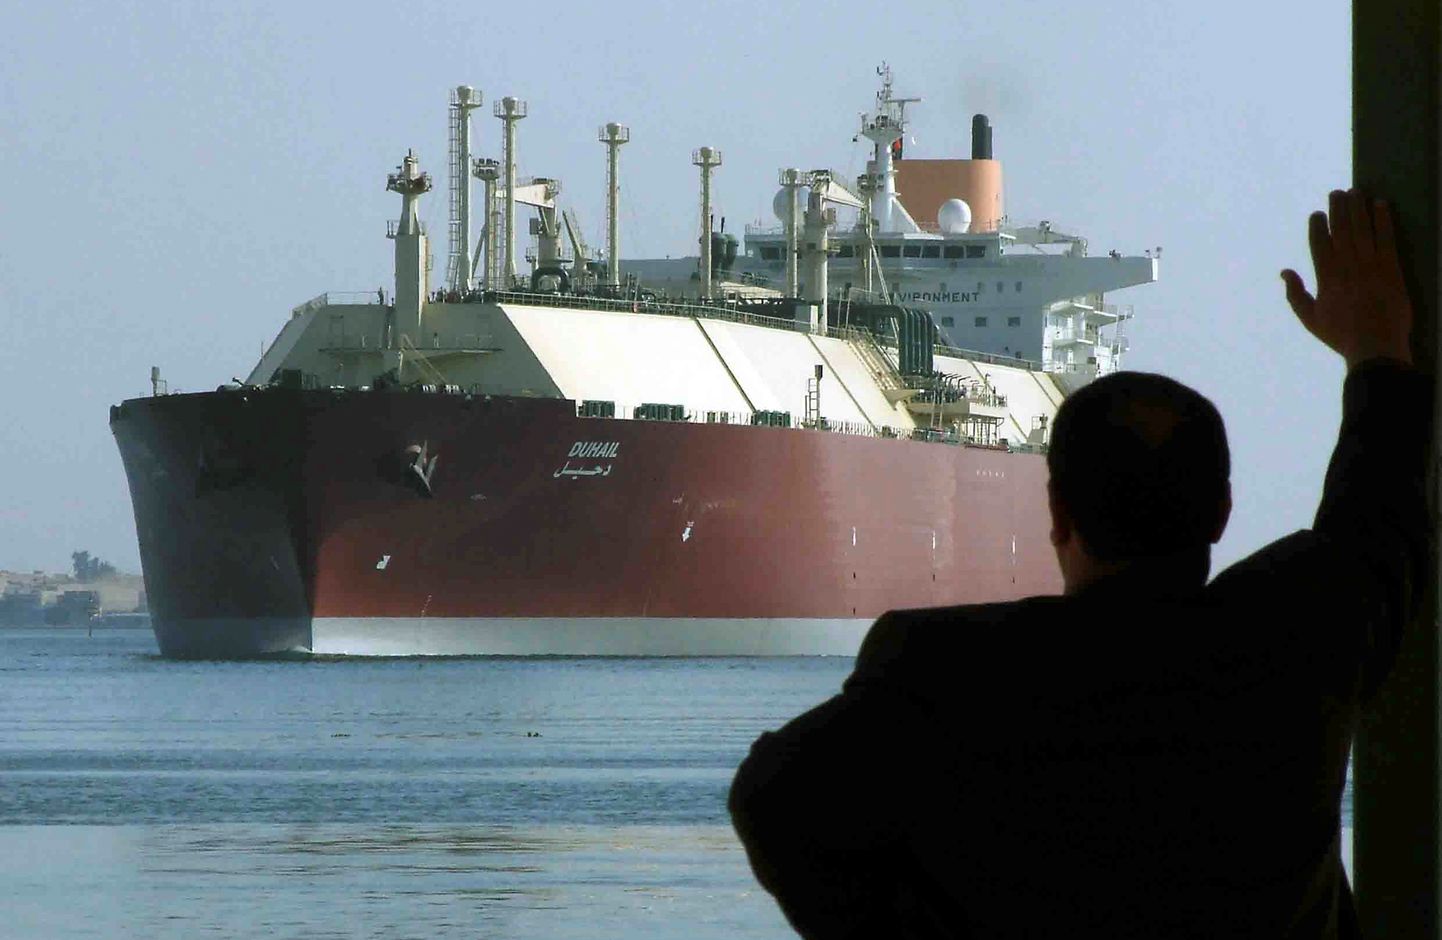 Katarile kuuluv maailma suurim veeldatud maagaasi (LNG) tanker Duhail.